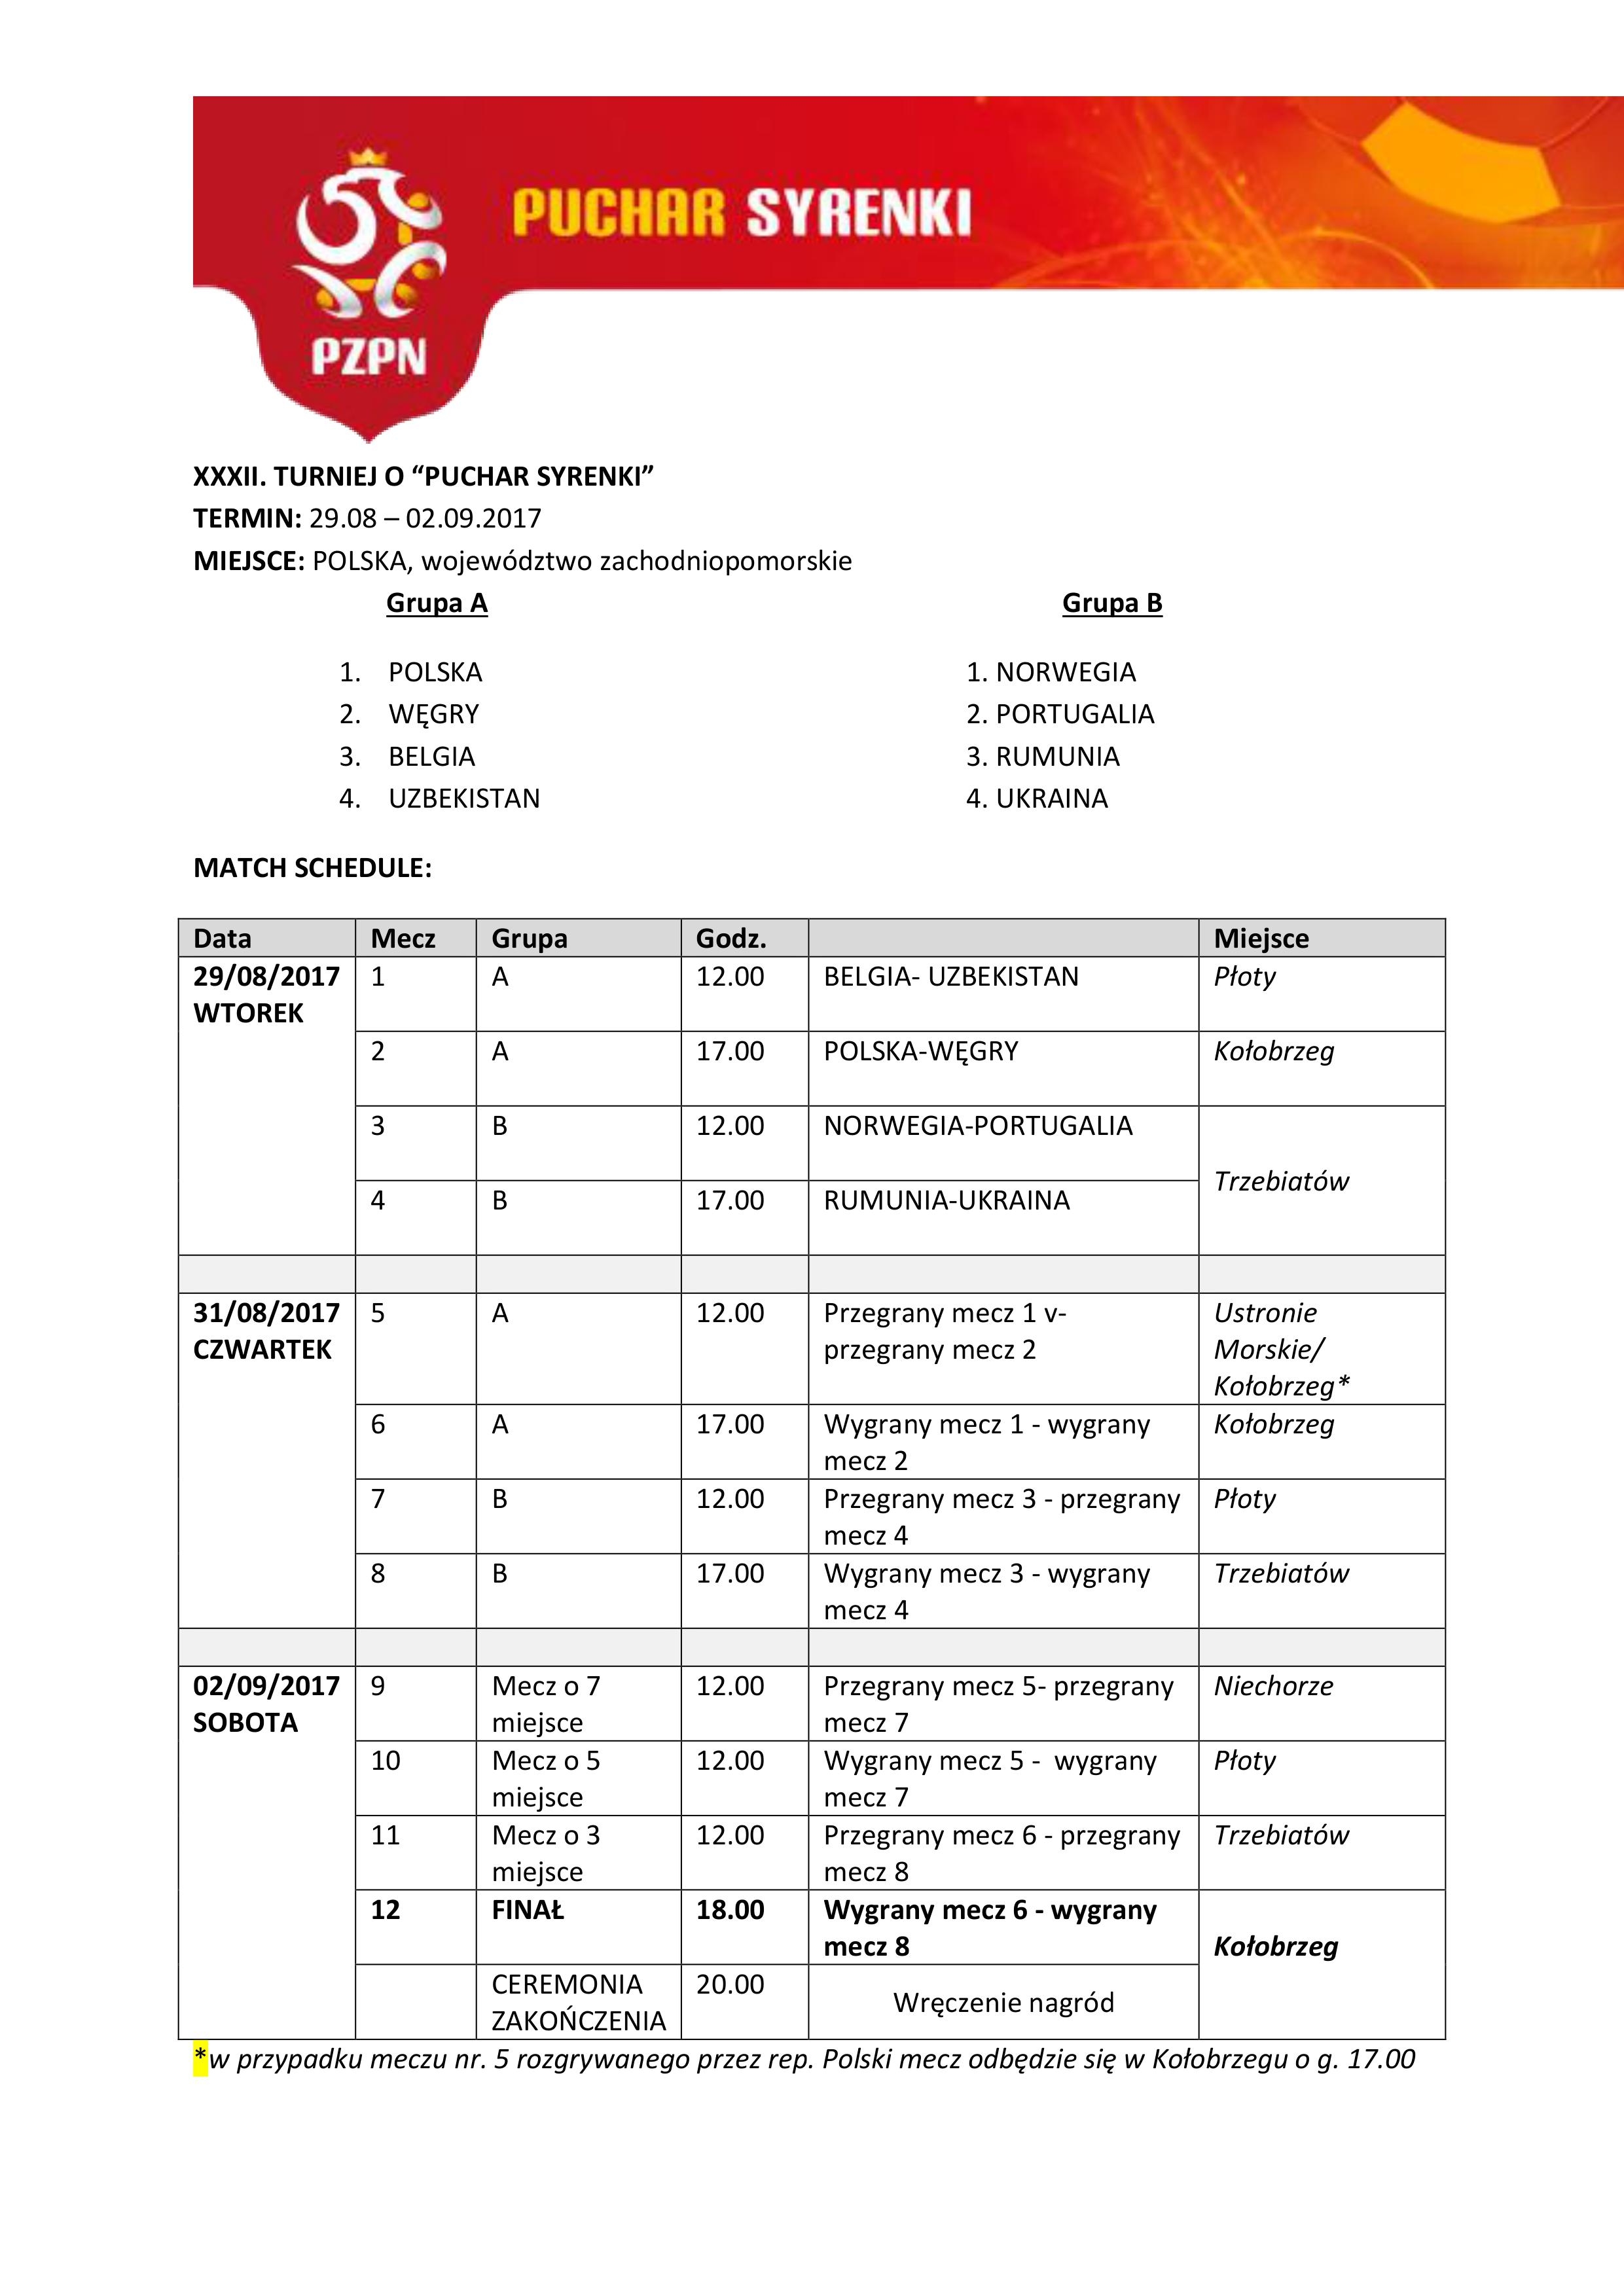 Puchar Syrenki 2017 - program